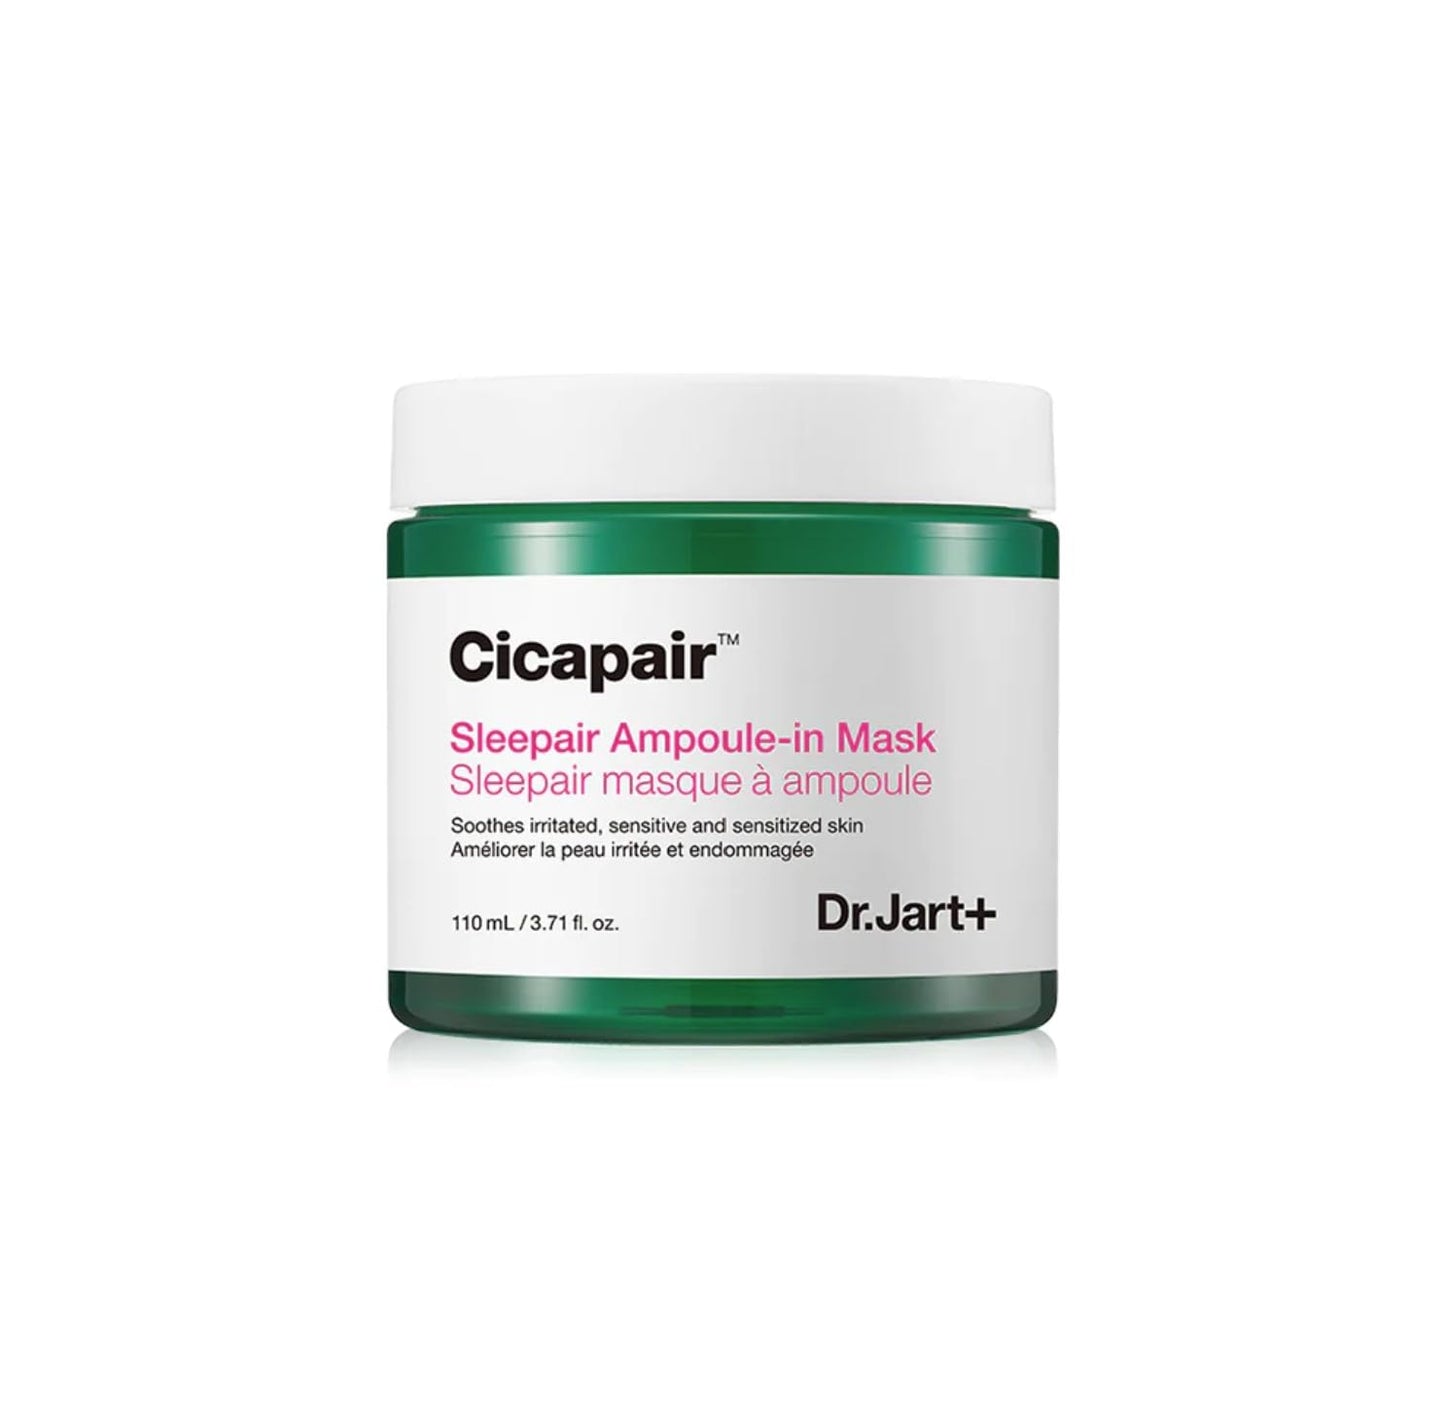 Cicapair Sleepair Ampoule-in Mask - 110ml